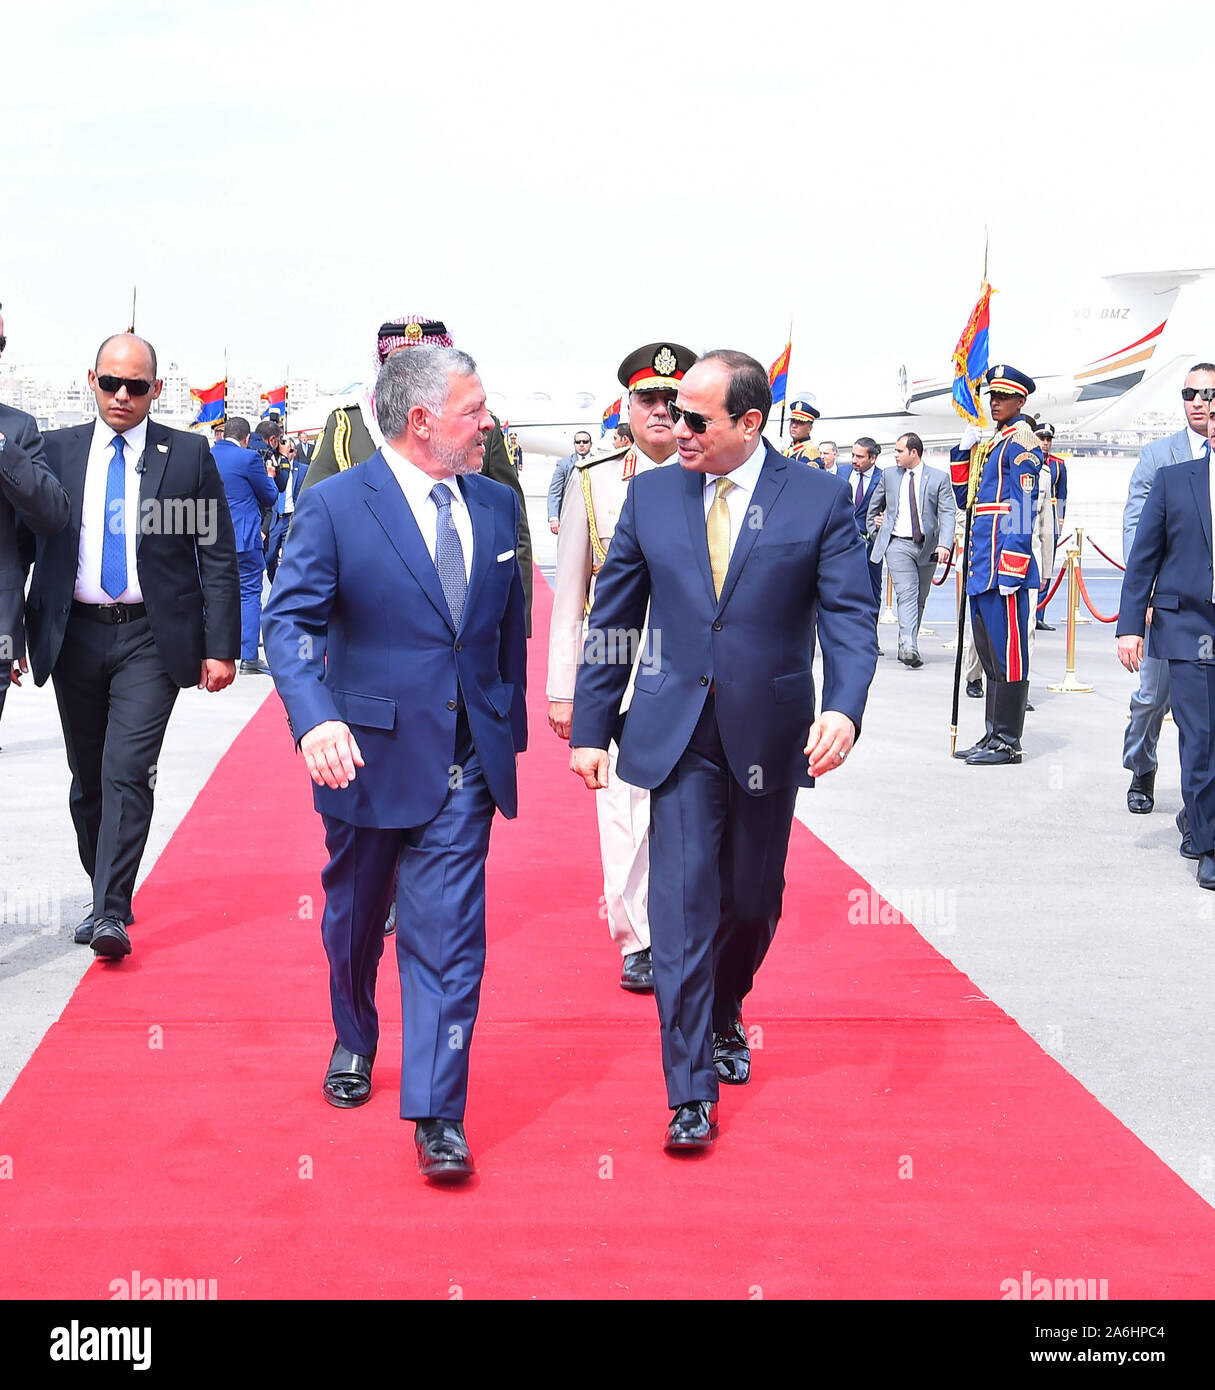 Le Caire, Égypte -- 9 octobre 2019 -- le roi Abdallah II de Jordanie a fait 1 journée de visite d'Etat en Egypte pour des entretiens avec le président égyptien Abdel Fatah al Sisi pour discuter des questions et des bilteral relations. (Photo) de la présidence égyptienne Banque D'Images